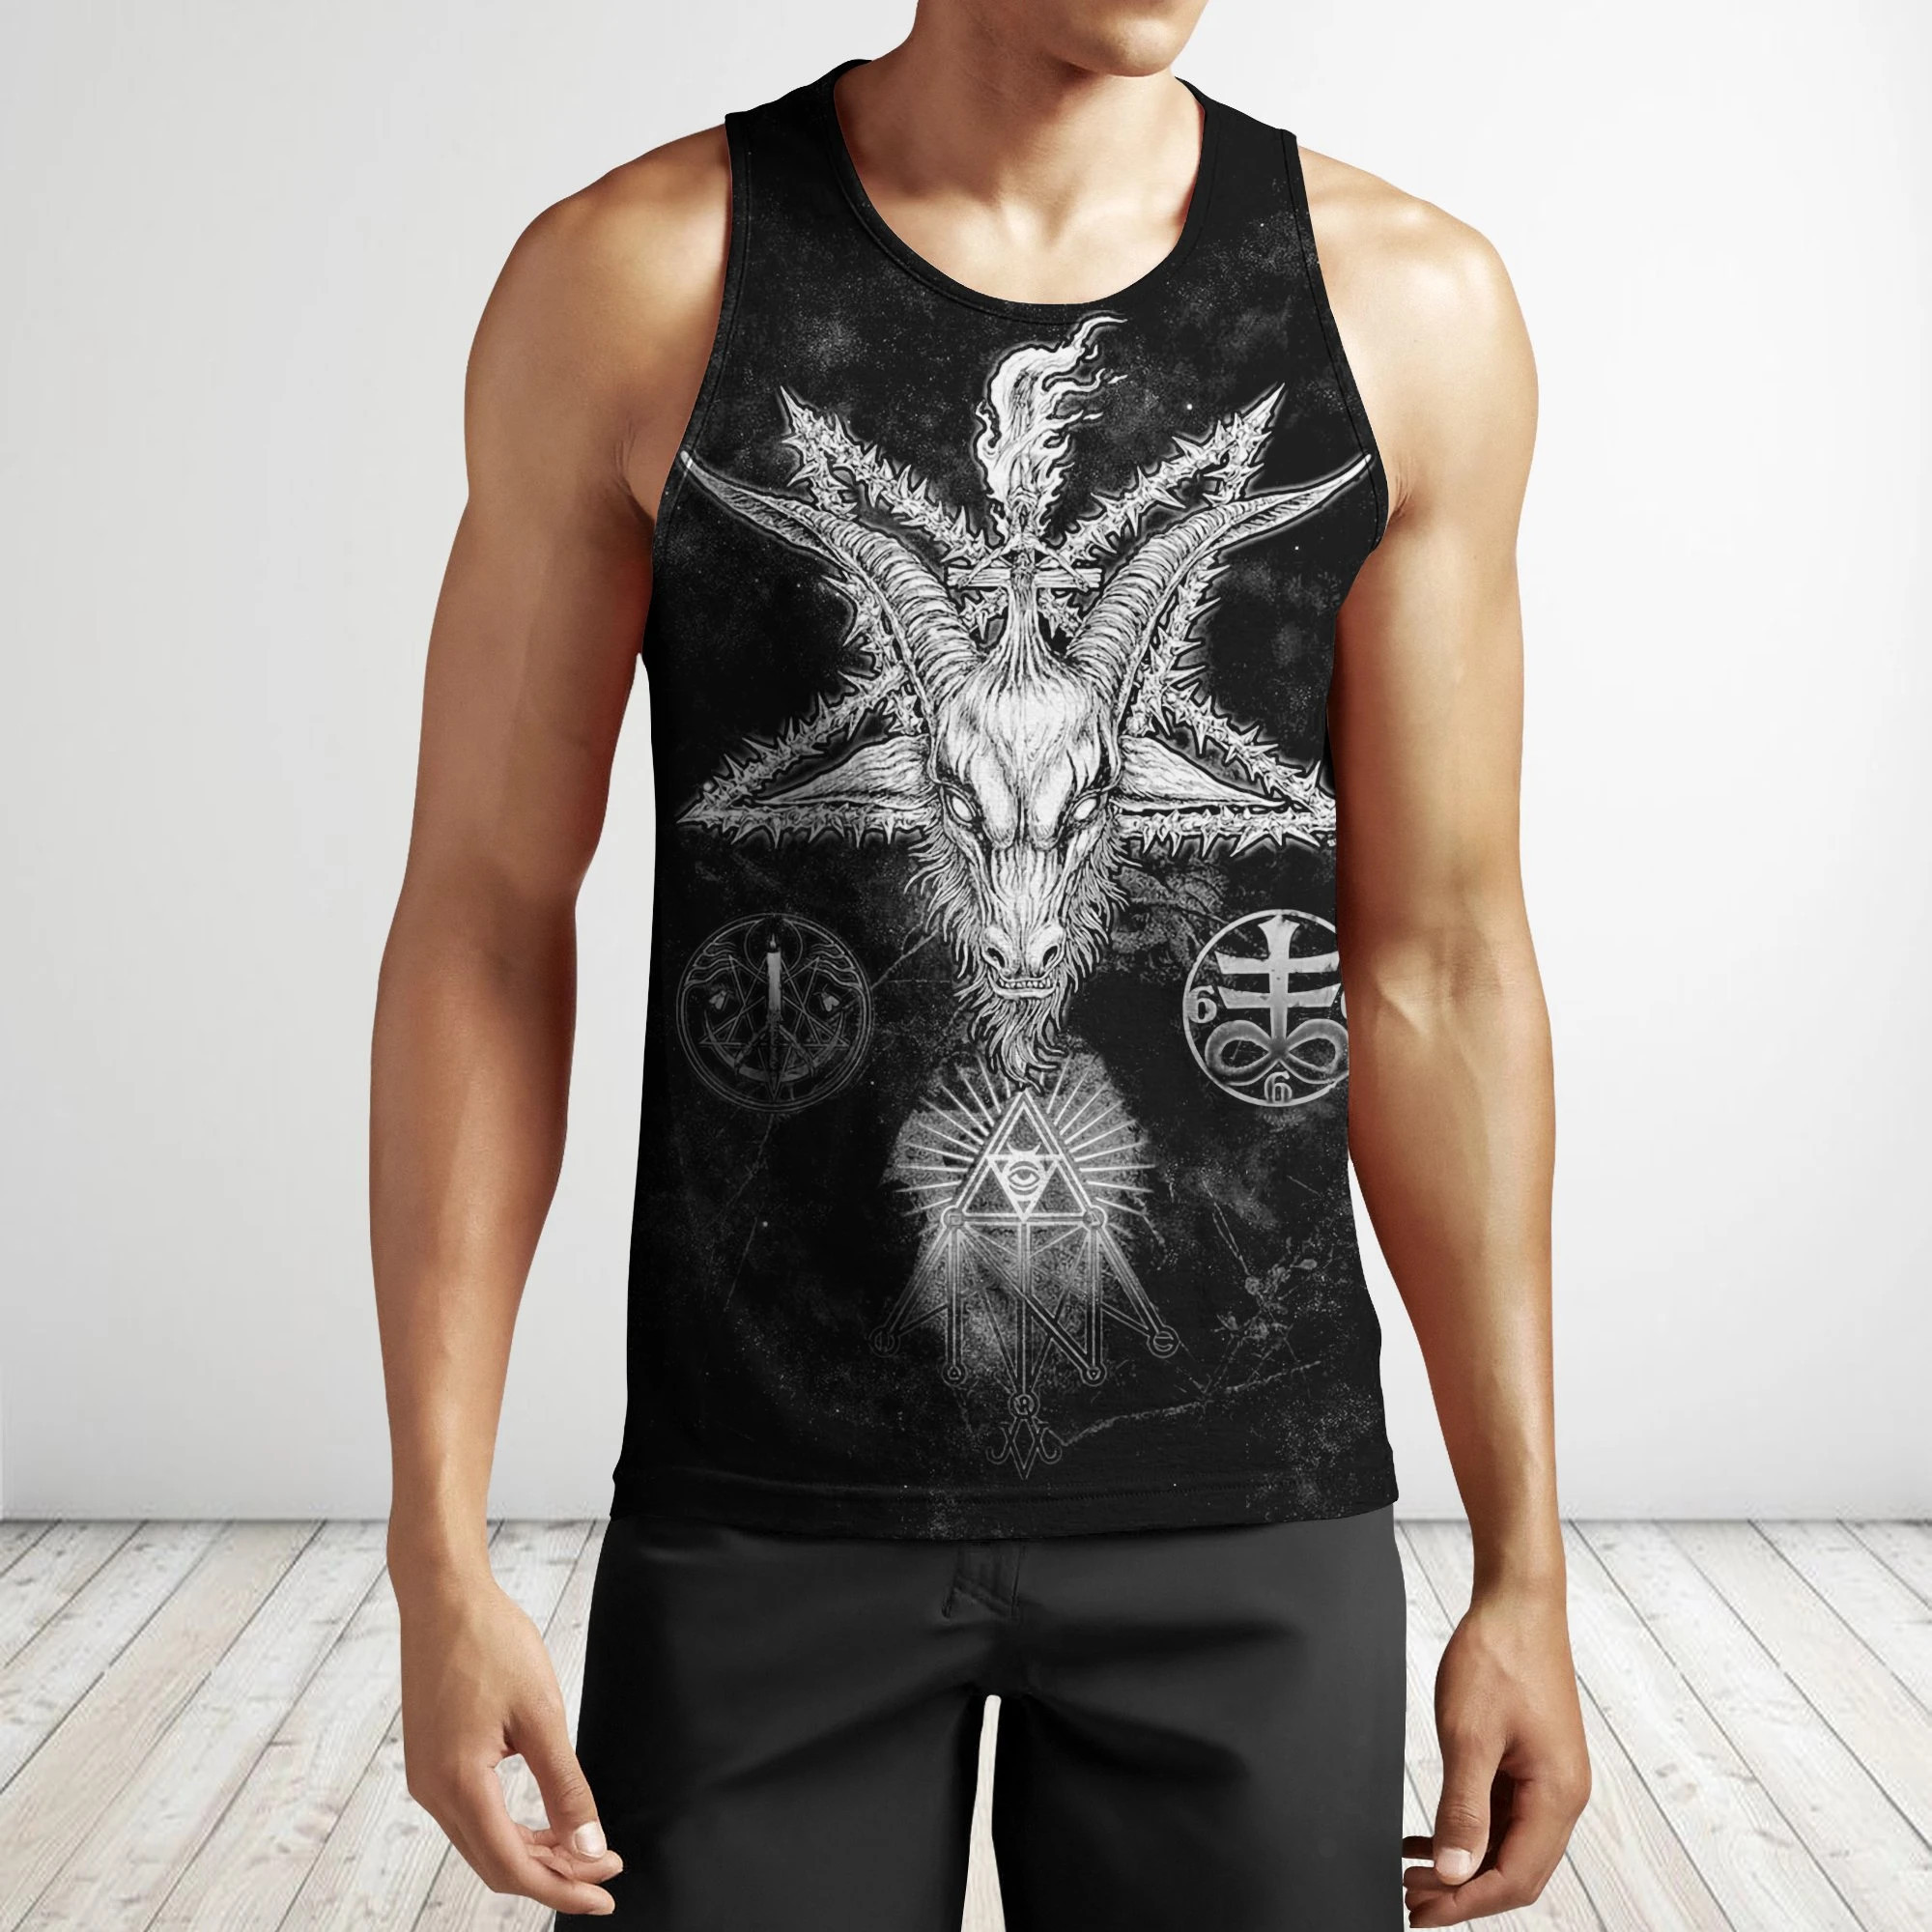 Satanic Devil 3D All Over Printed Hoodie Shirts For Men And Women MP750-Apparel-MP-Hoodie-S-Vibe Cosy™